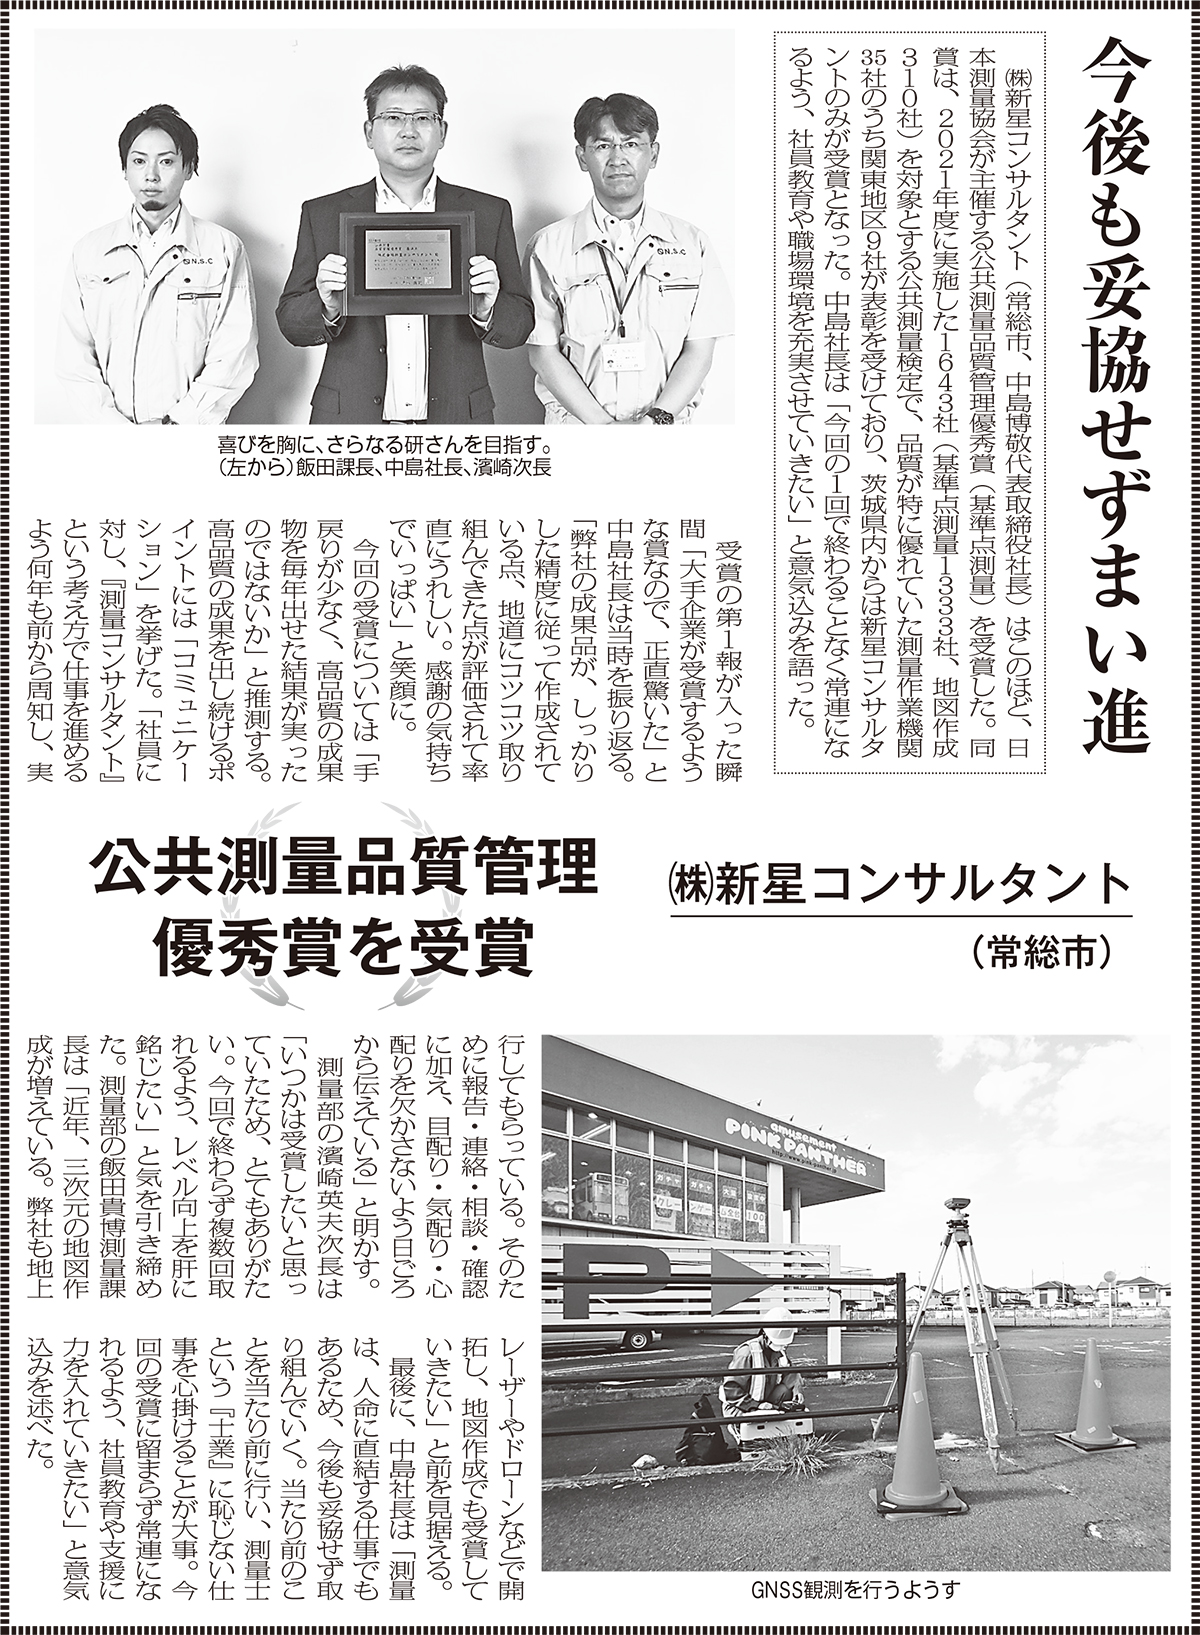 日本測量協会主催の公共測量品質管理優秀賞受賞が日本工業経済新聞に掲載されました。